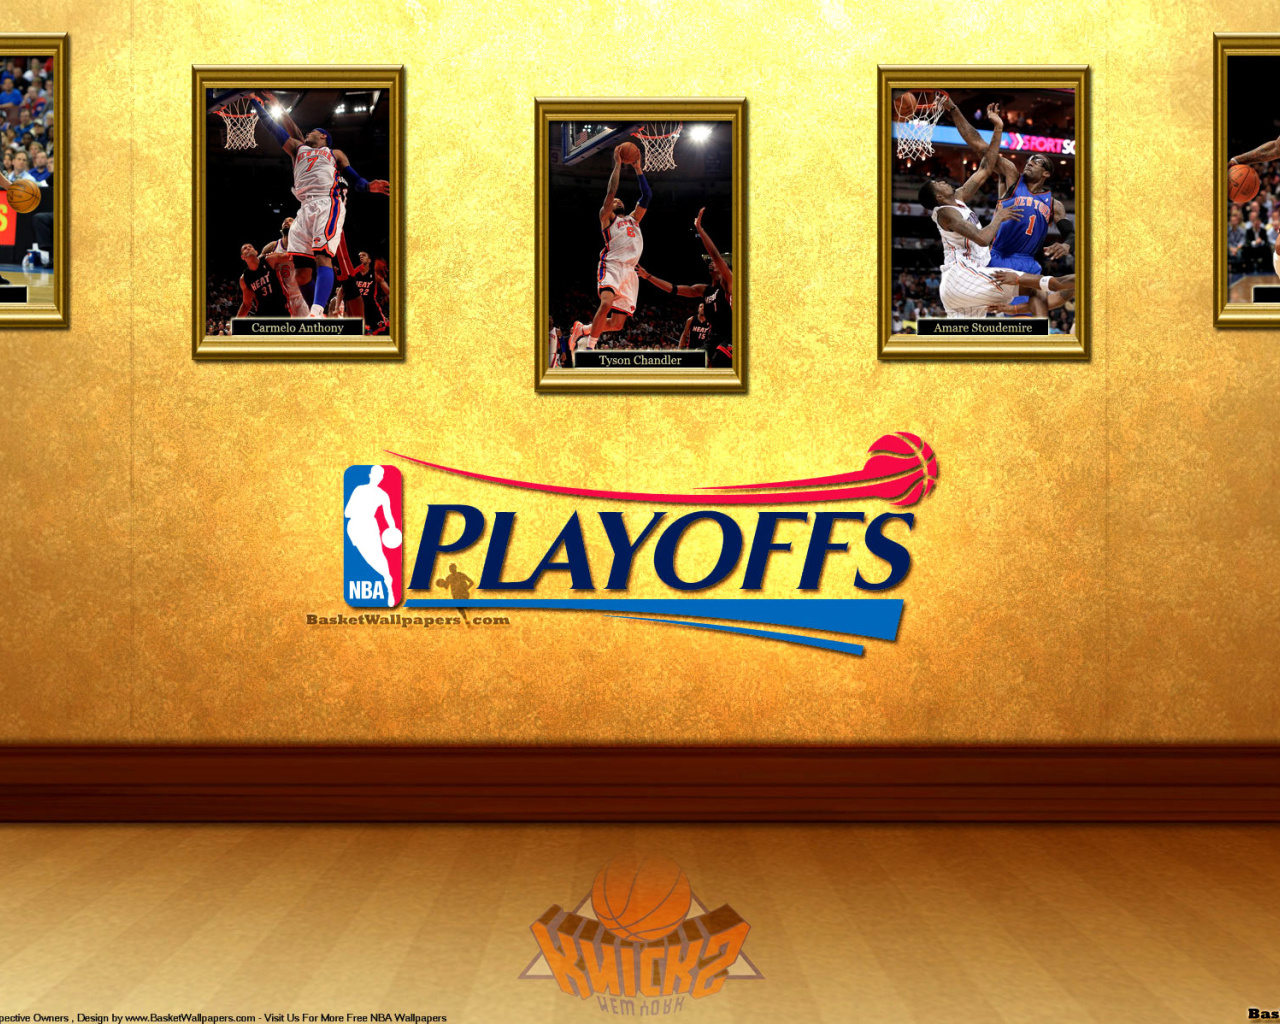 New York Knicks NBA Playoffs wallpaper 1280x1024